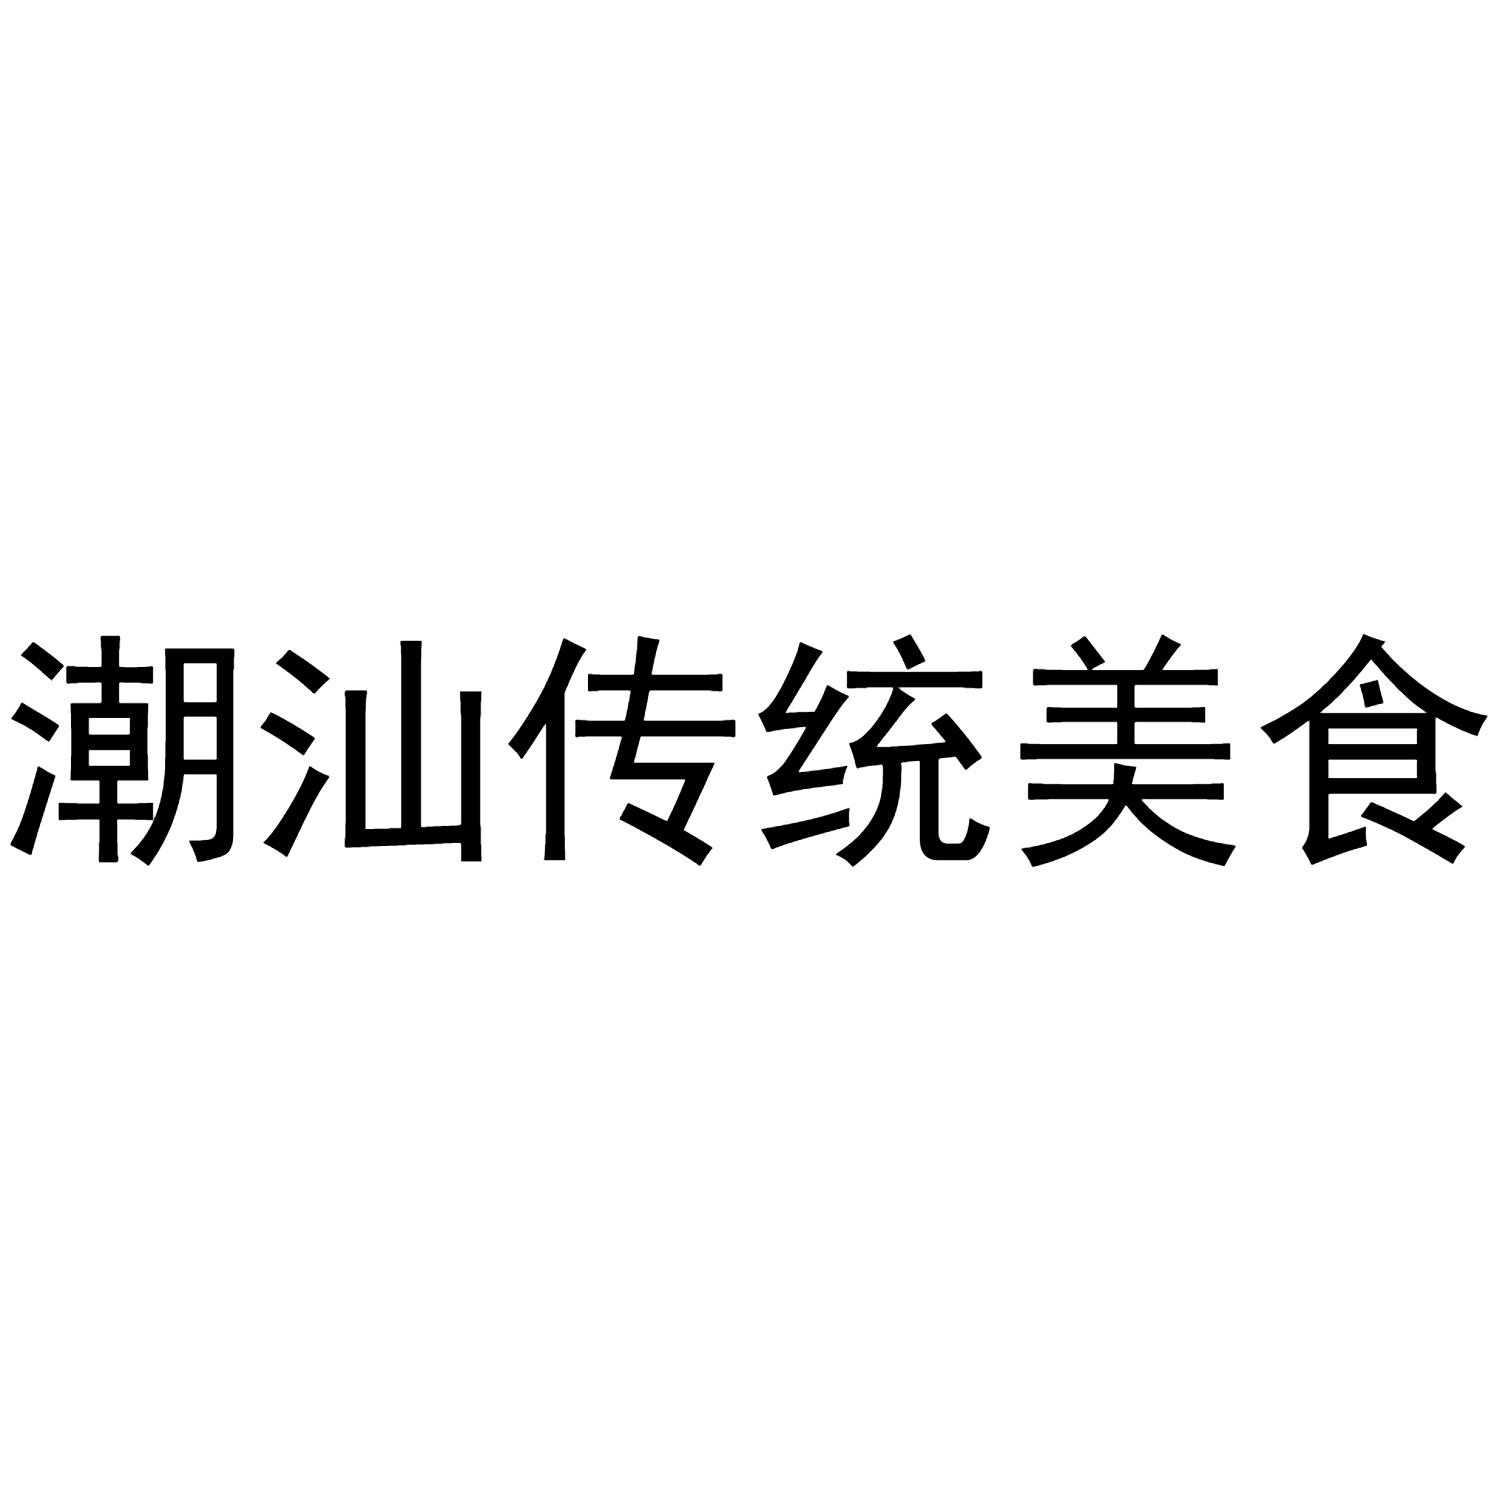 商标文字潮汕传统美食商标注册号 49343908,商标申请人谢奕彦的商标